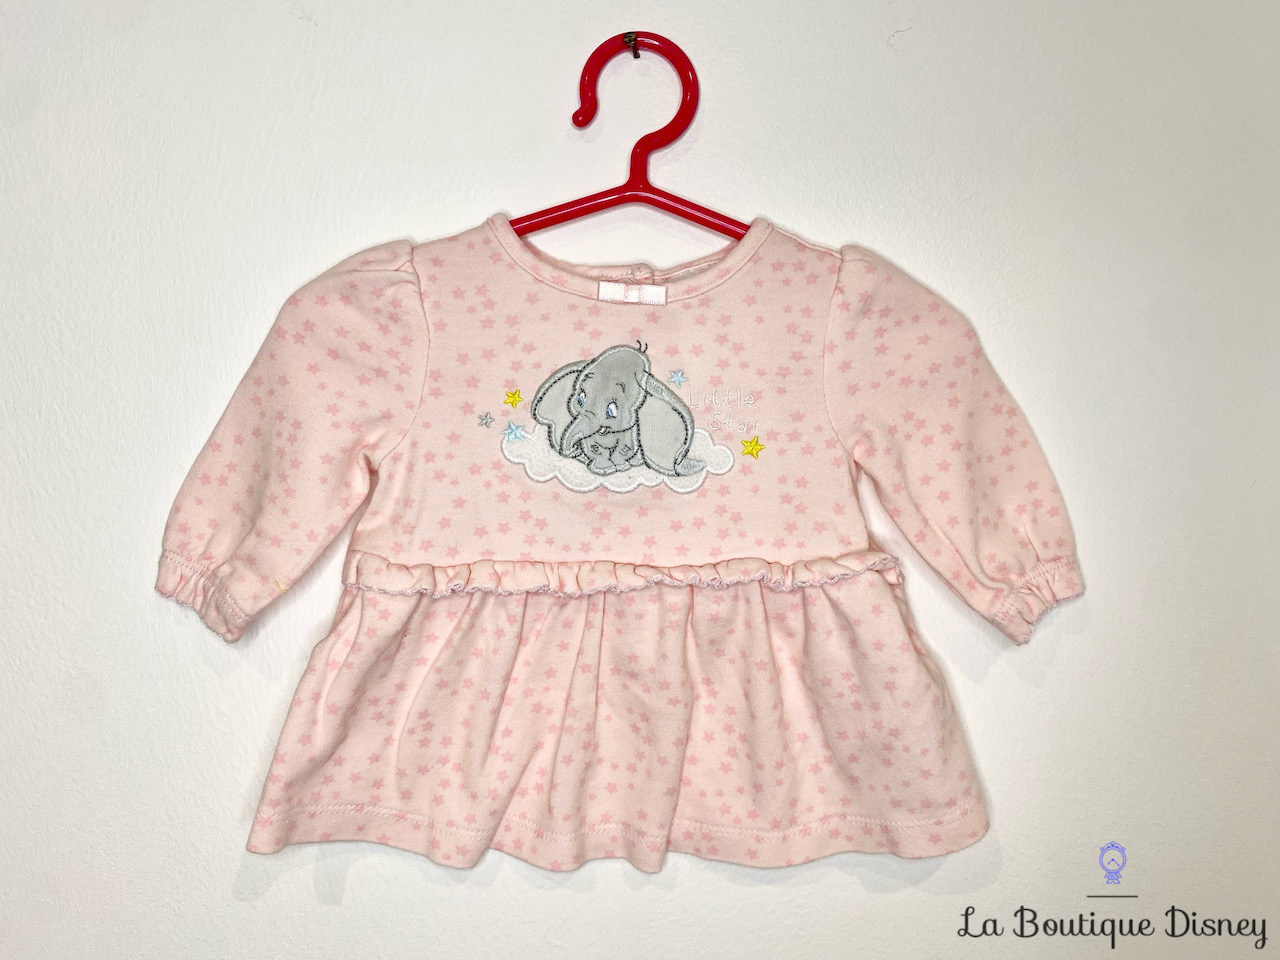 Robe Dumbo Disney Baby by Disney Store taille 0-3 mois rose étoiles Little  star